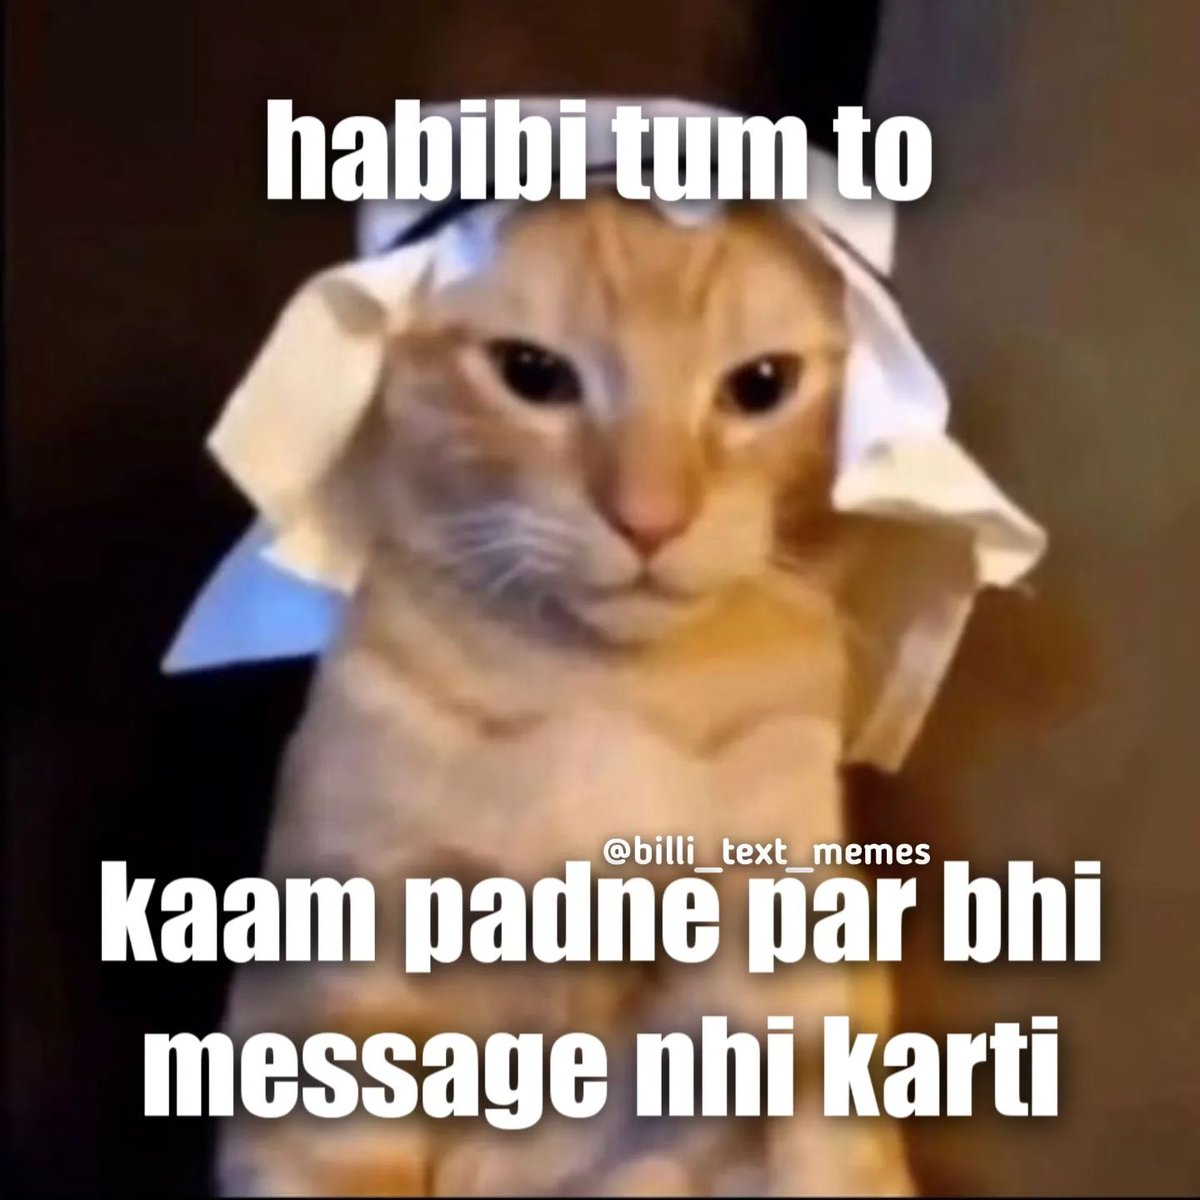 🥹

#cat #catmeme #catmemes #catmemedaily #dailymeme #dailymemes #memes #meme #memedailys #memesdaily #crushmemes #crush #flirt #flirting #cutecat #cutecats #indianmemes #indianmeme #hindi #hindimemes #hindimeme #billi_text_memes